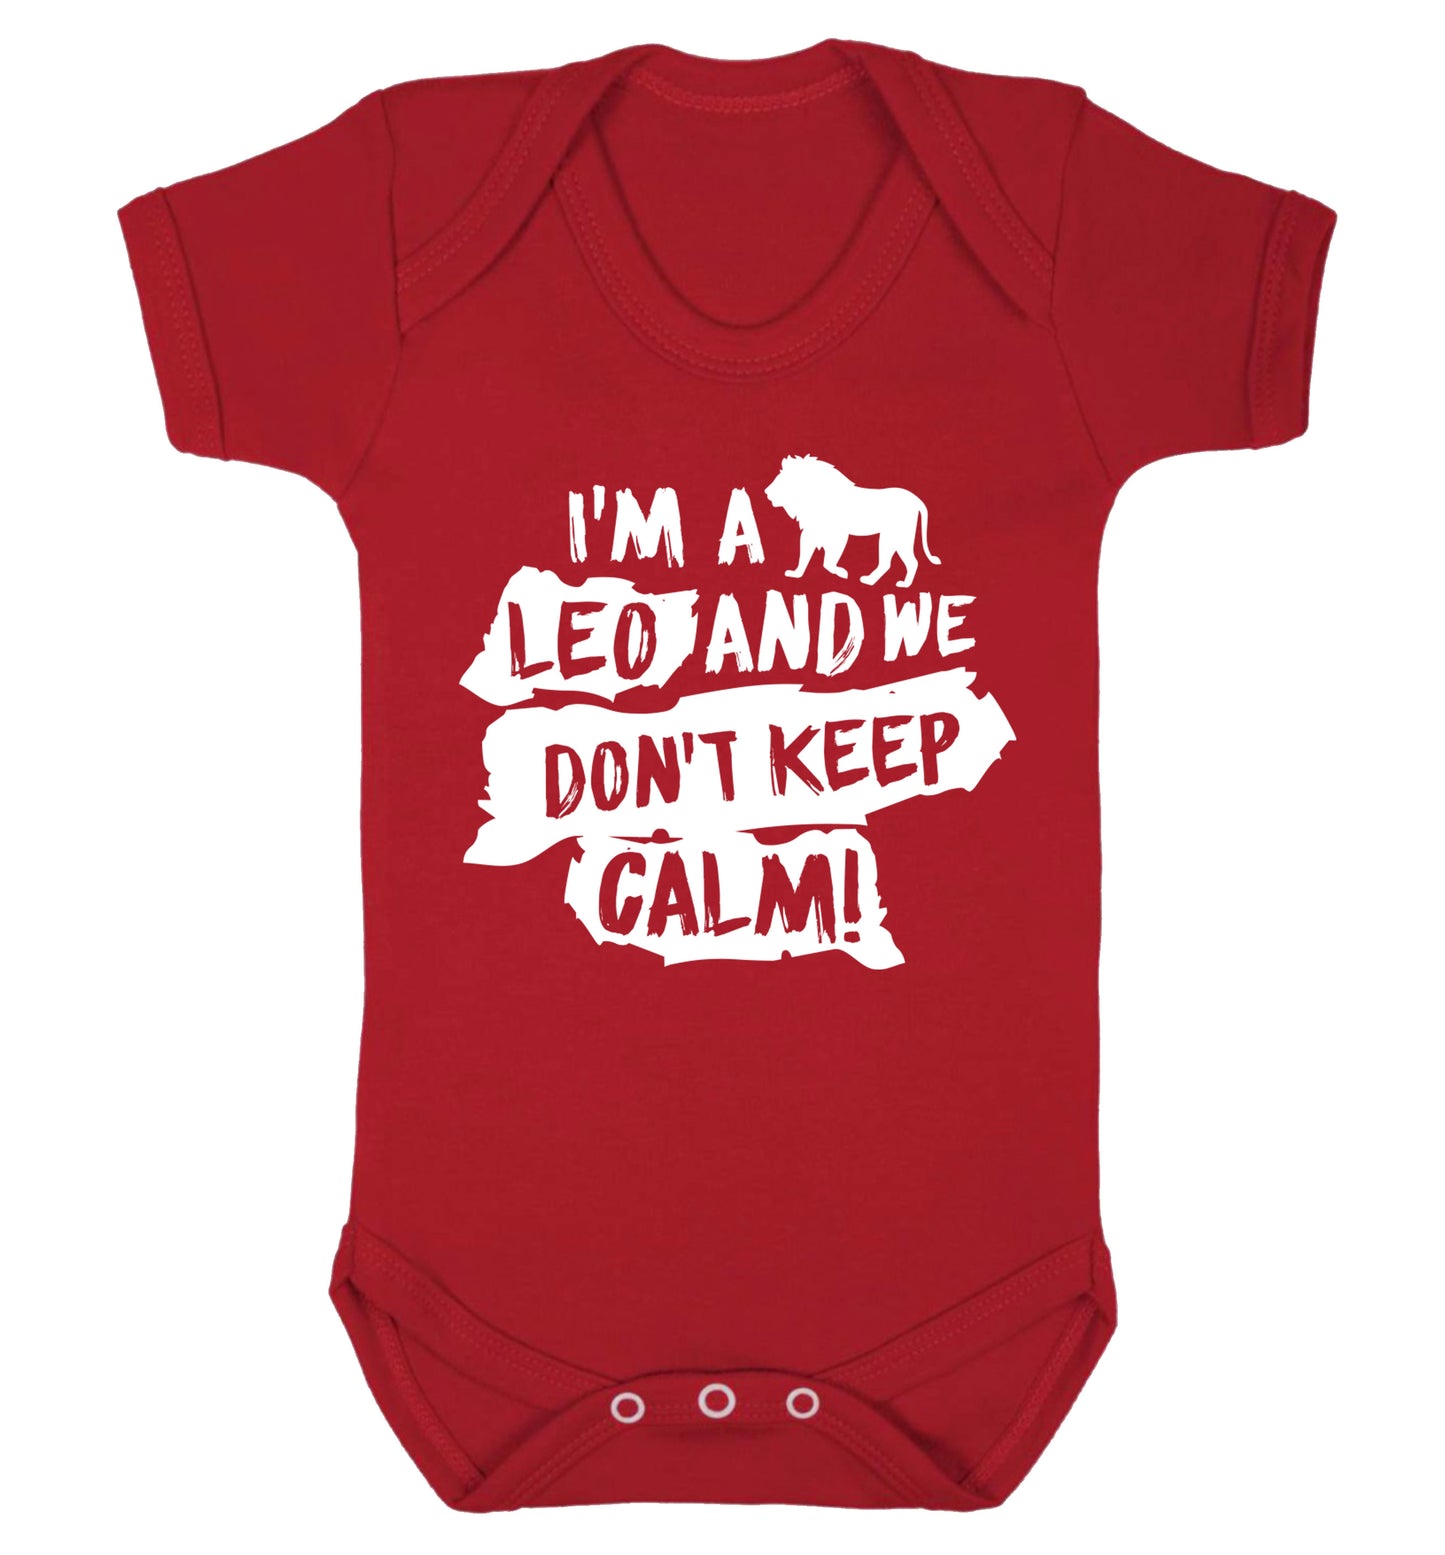 I'm a leo and we don't keep calm! Baby Vest red 18-24 months